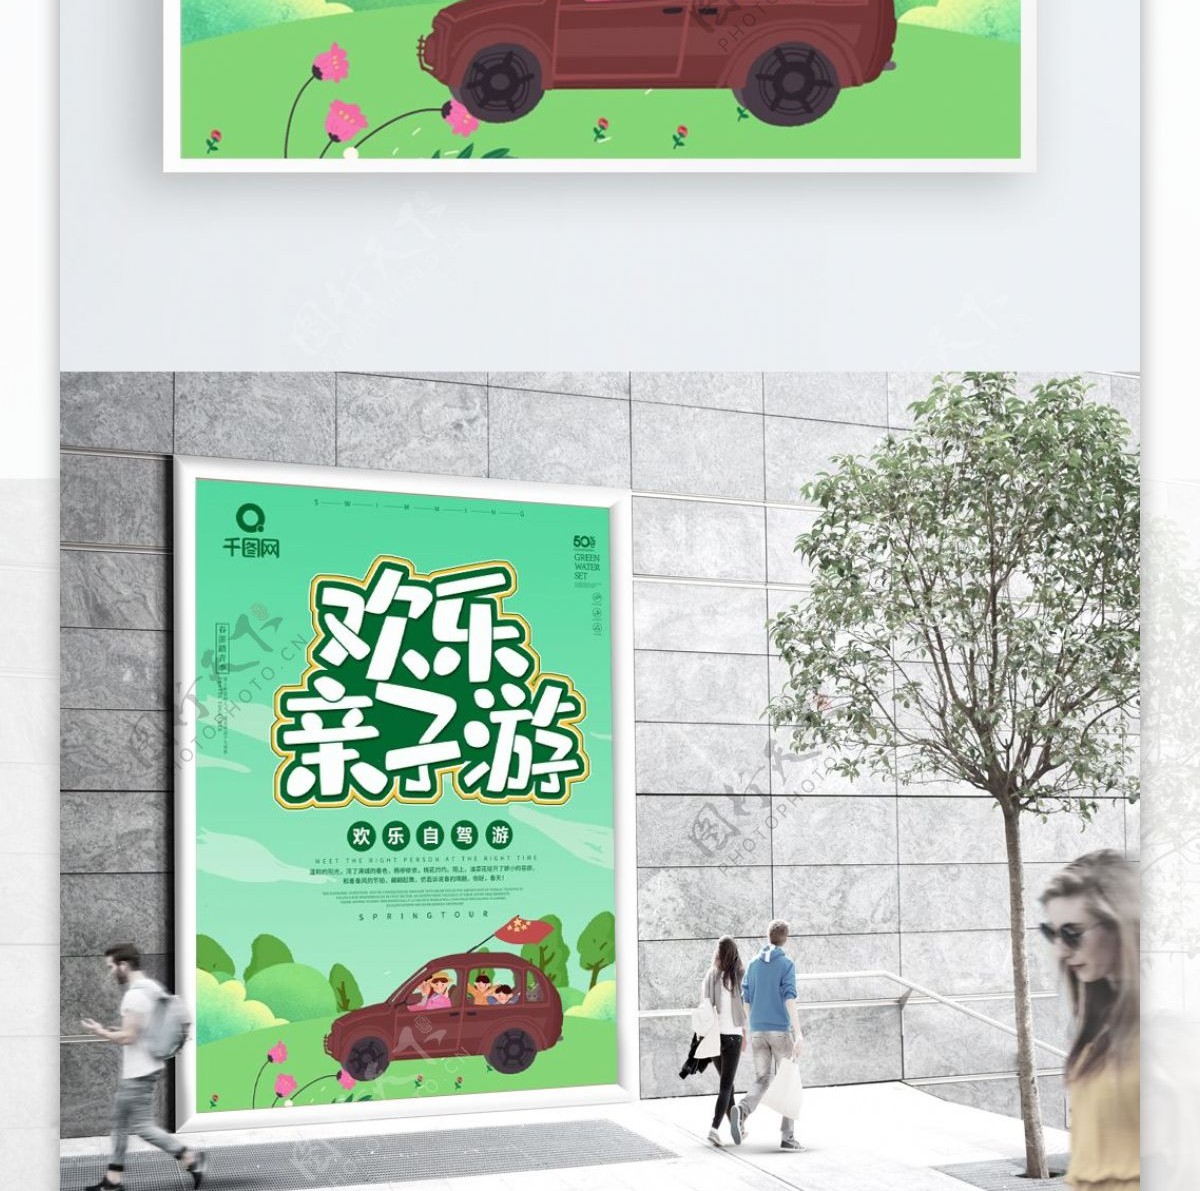 绿色卡通可爱自驾游海报